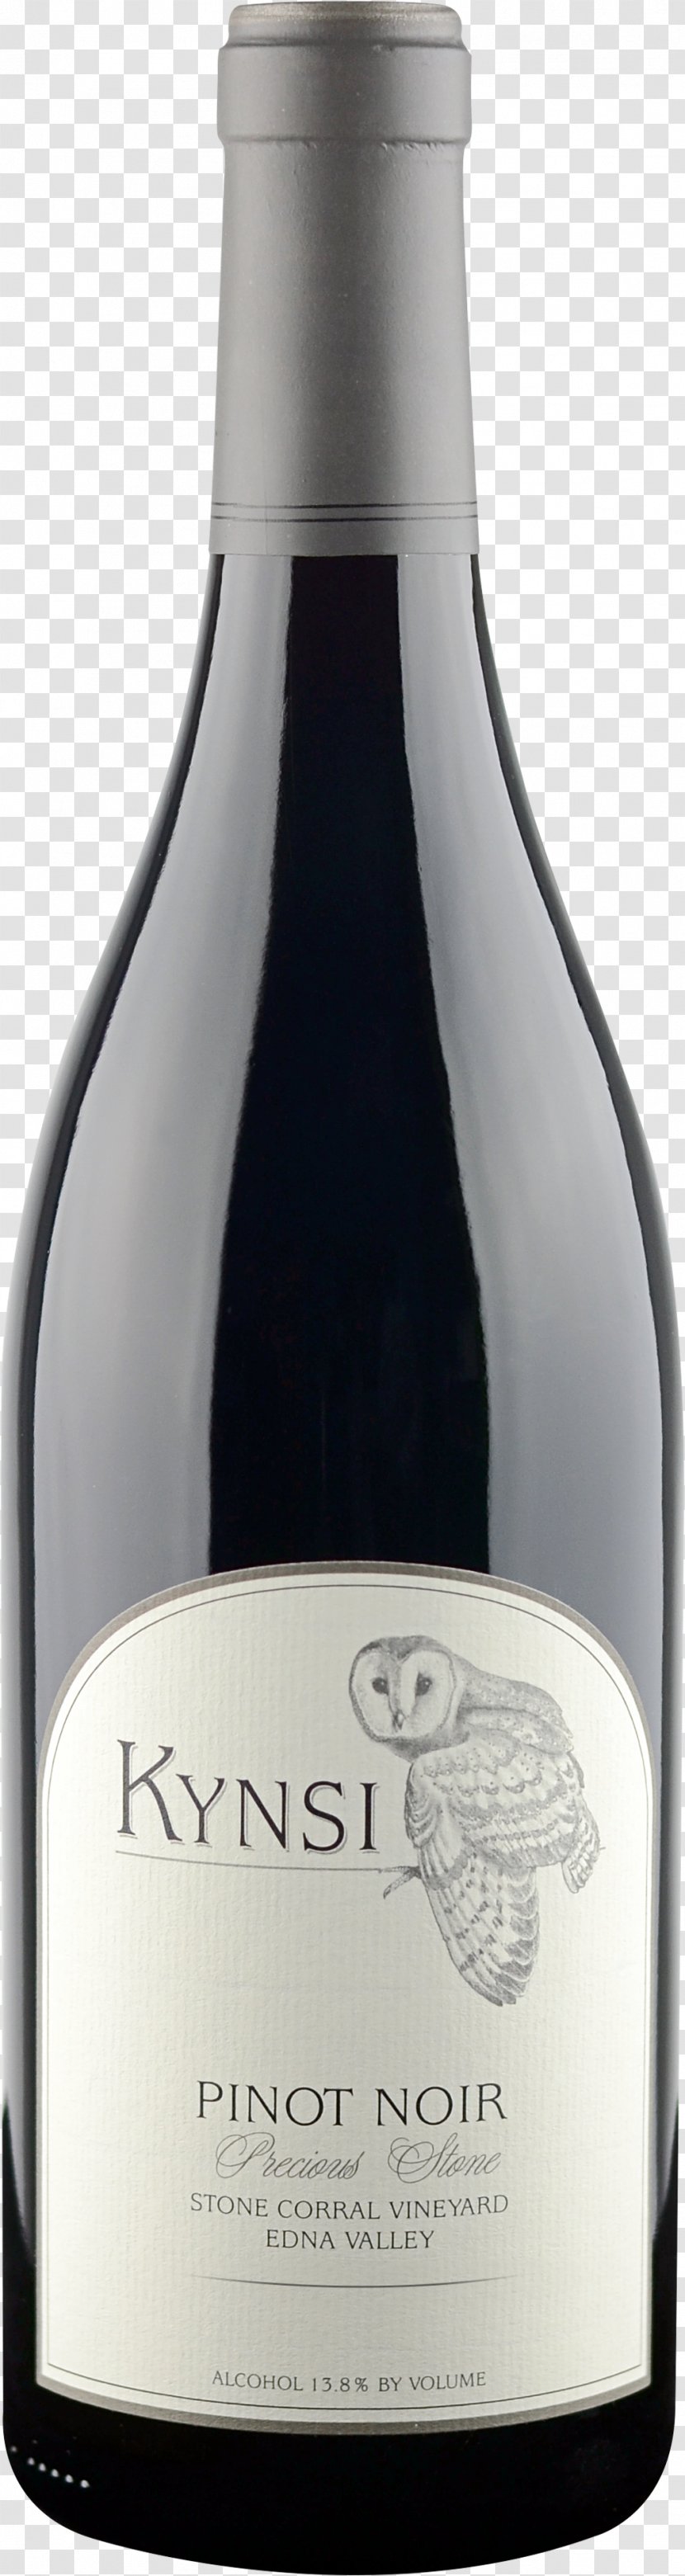 Pinot Noir Shiraz Red Wine Cabernet Sauvignon - Bottle Transparent PNG